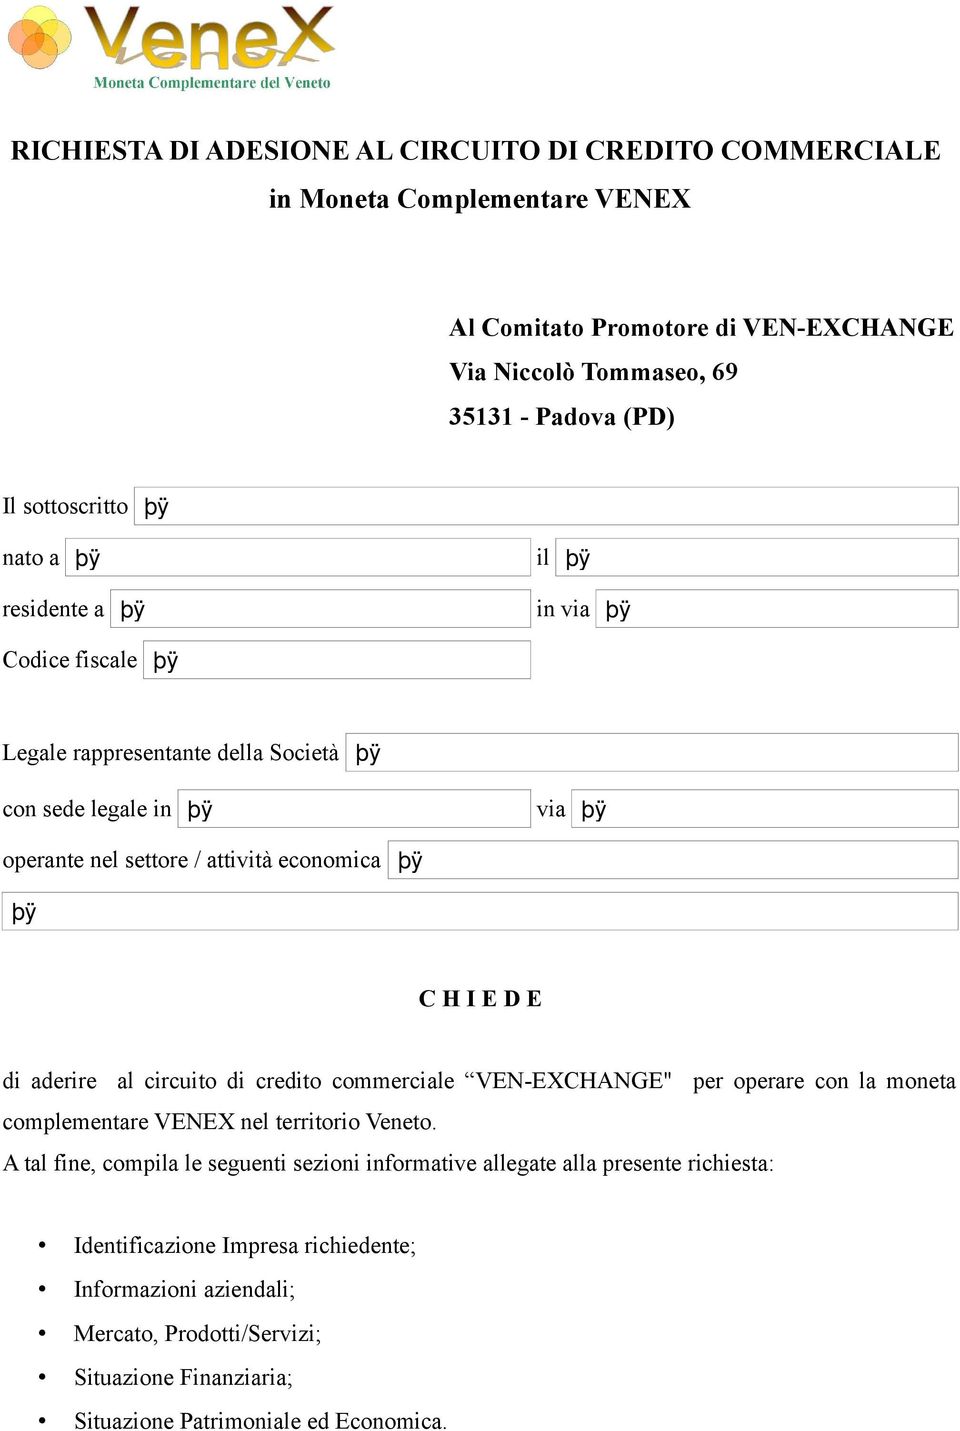 aderire al circuito di credito commerciale VEN-EXCHANGE" per operare con la moneta complementare VENEX nel territorio Veneto.